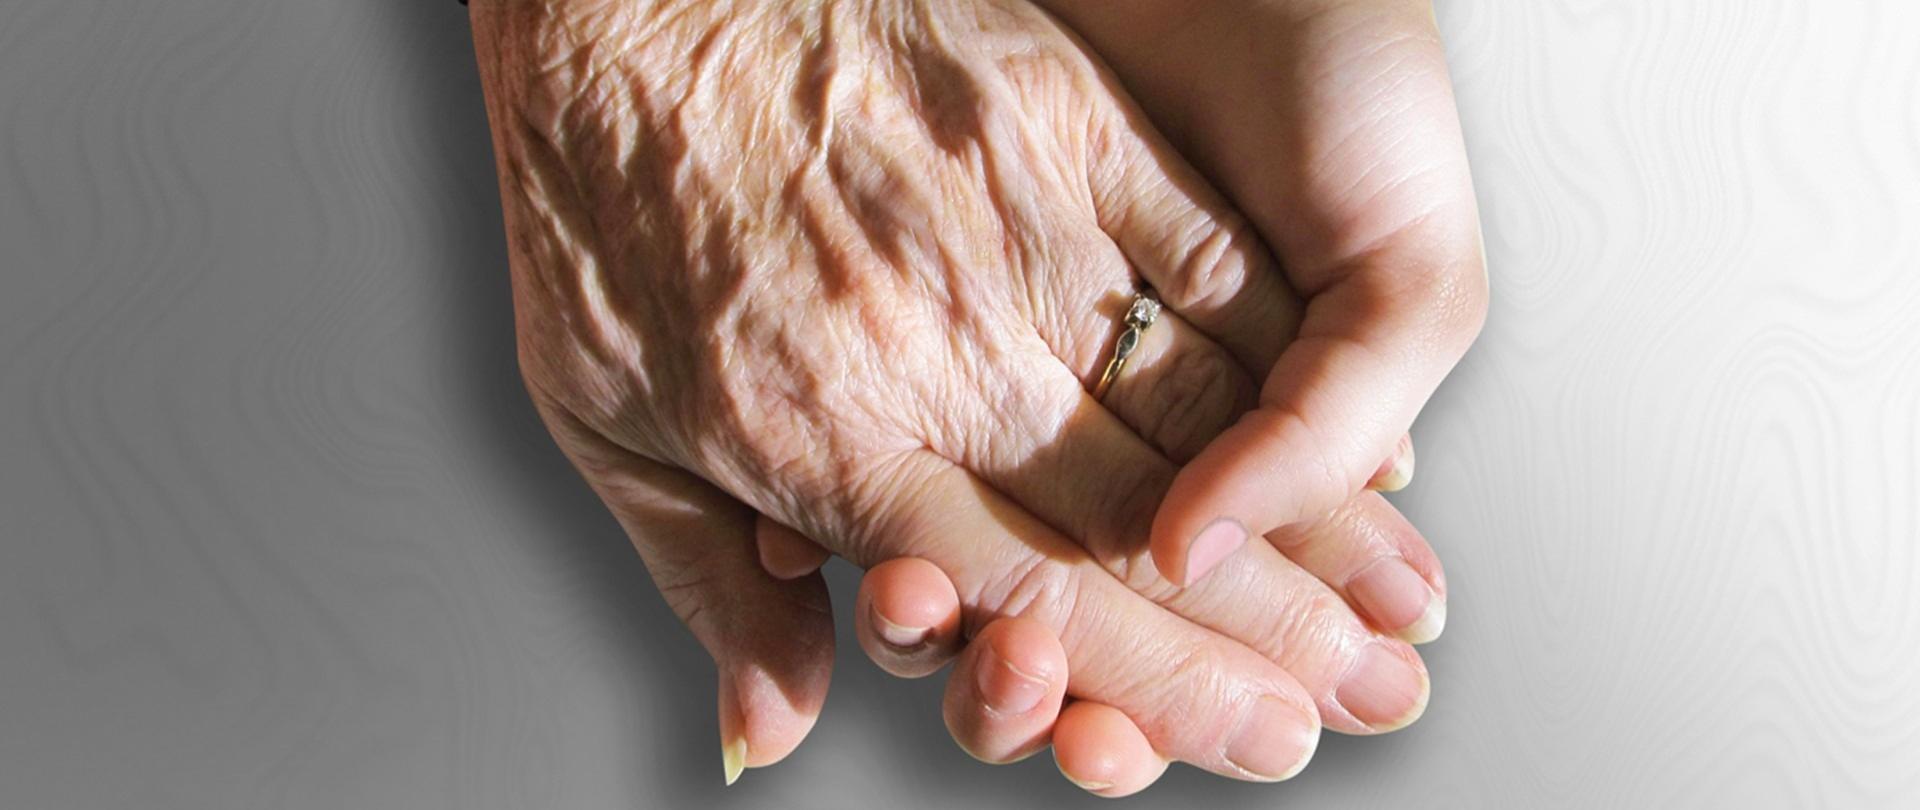 zdjęcie dwóch dłoni, dłoń młodszej osoby trzyma dłoń starszej osoby